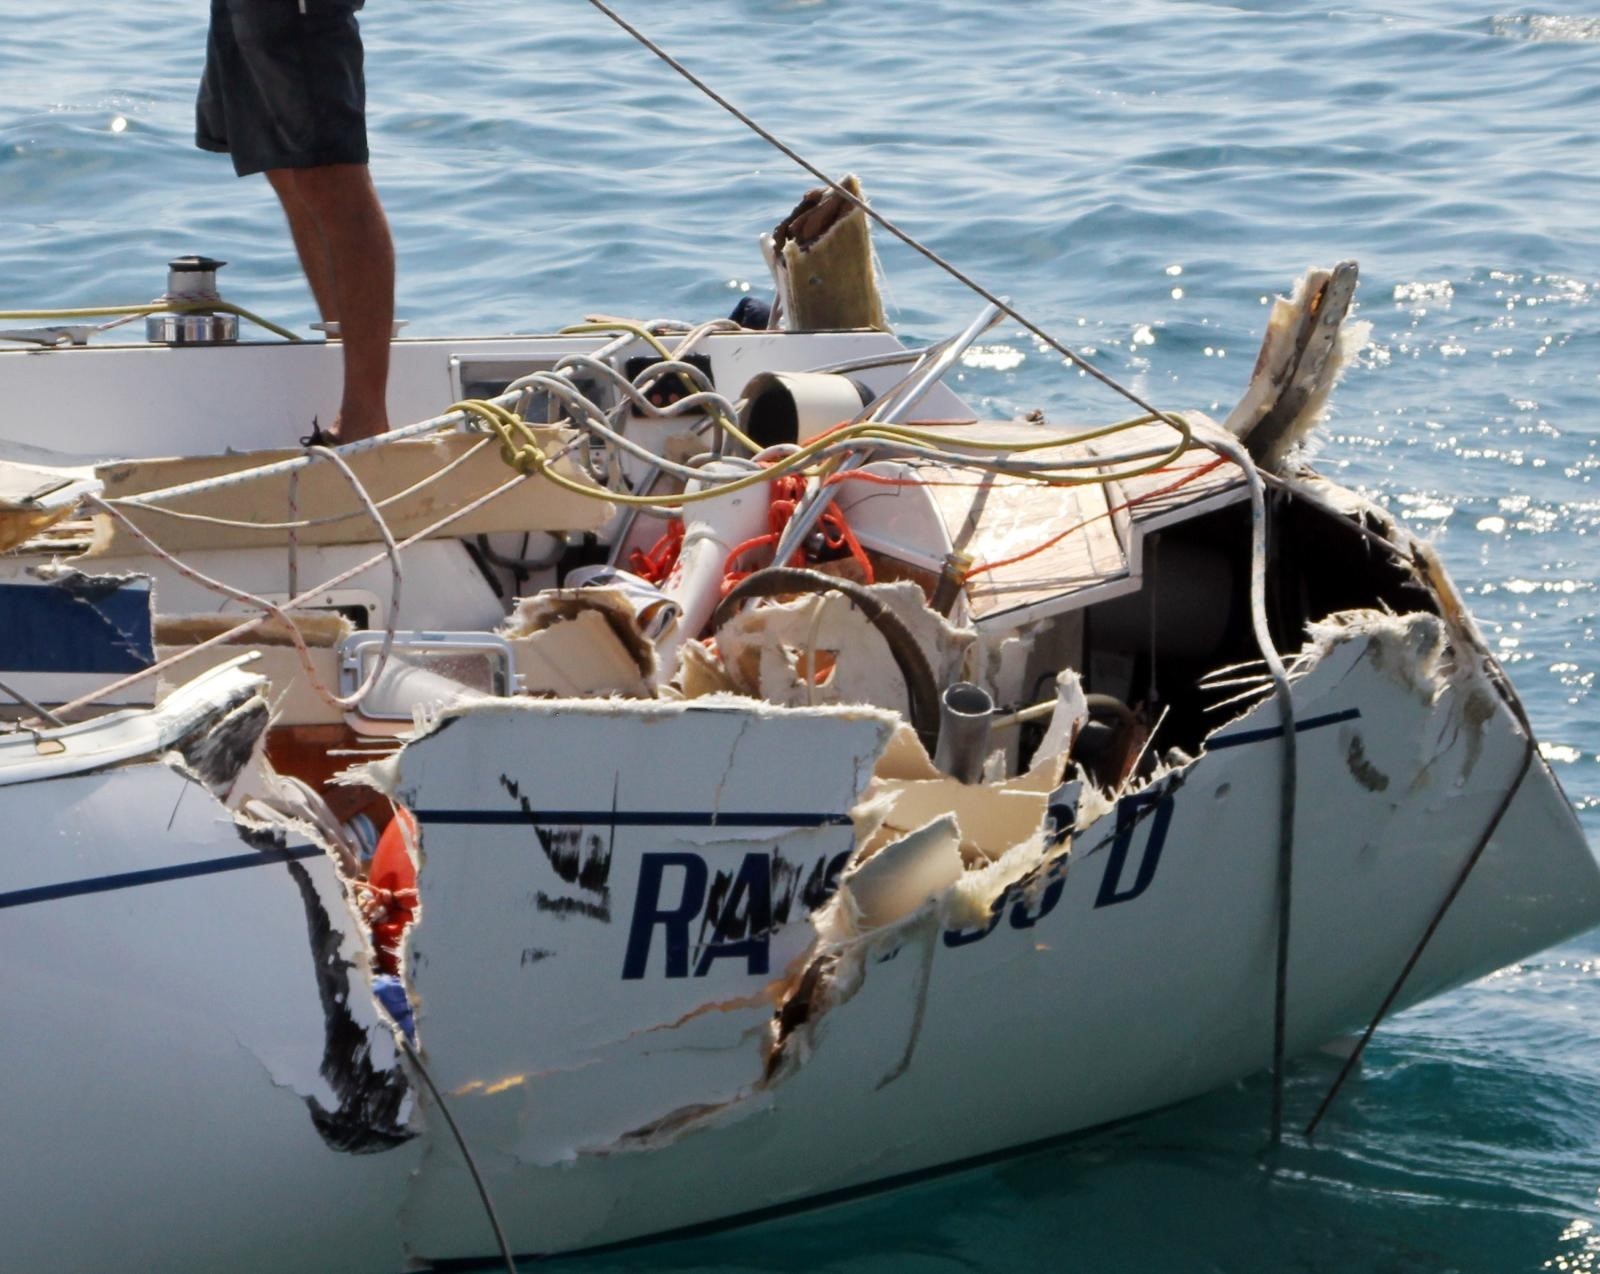 16.08.2011.,Sibenik - Tragicna pomorska nesreca u primostenskom akvatoriju u kojoj su smrtno stradale dvije osobe.
Photo: Dusko Jaramaz/PIXSELL